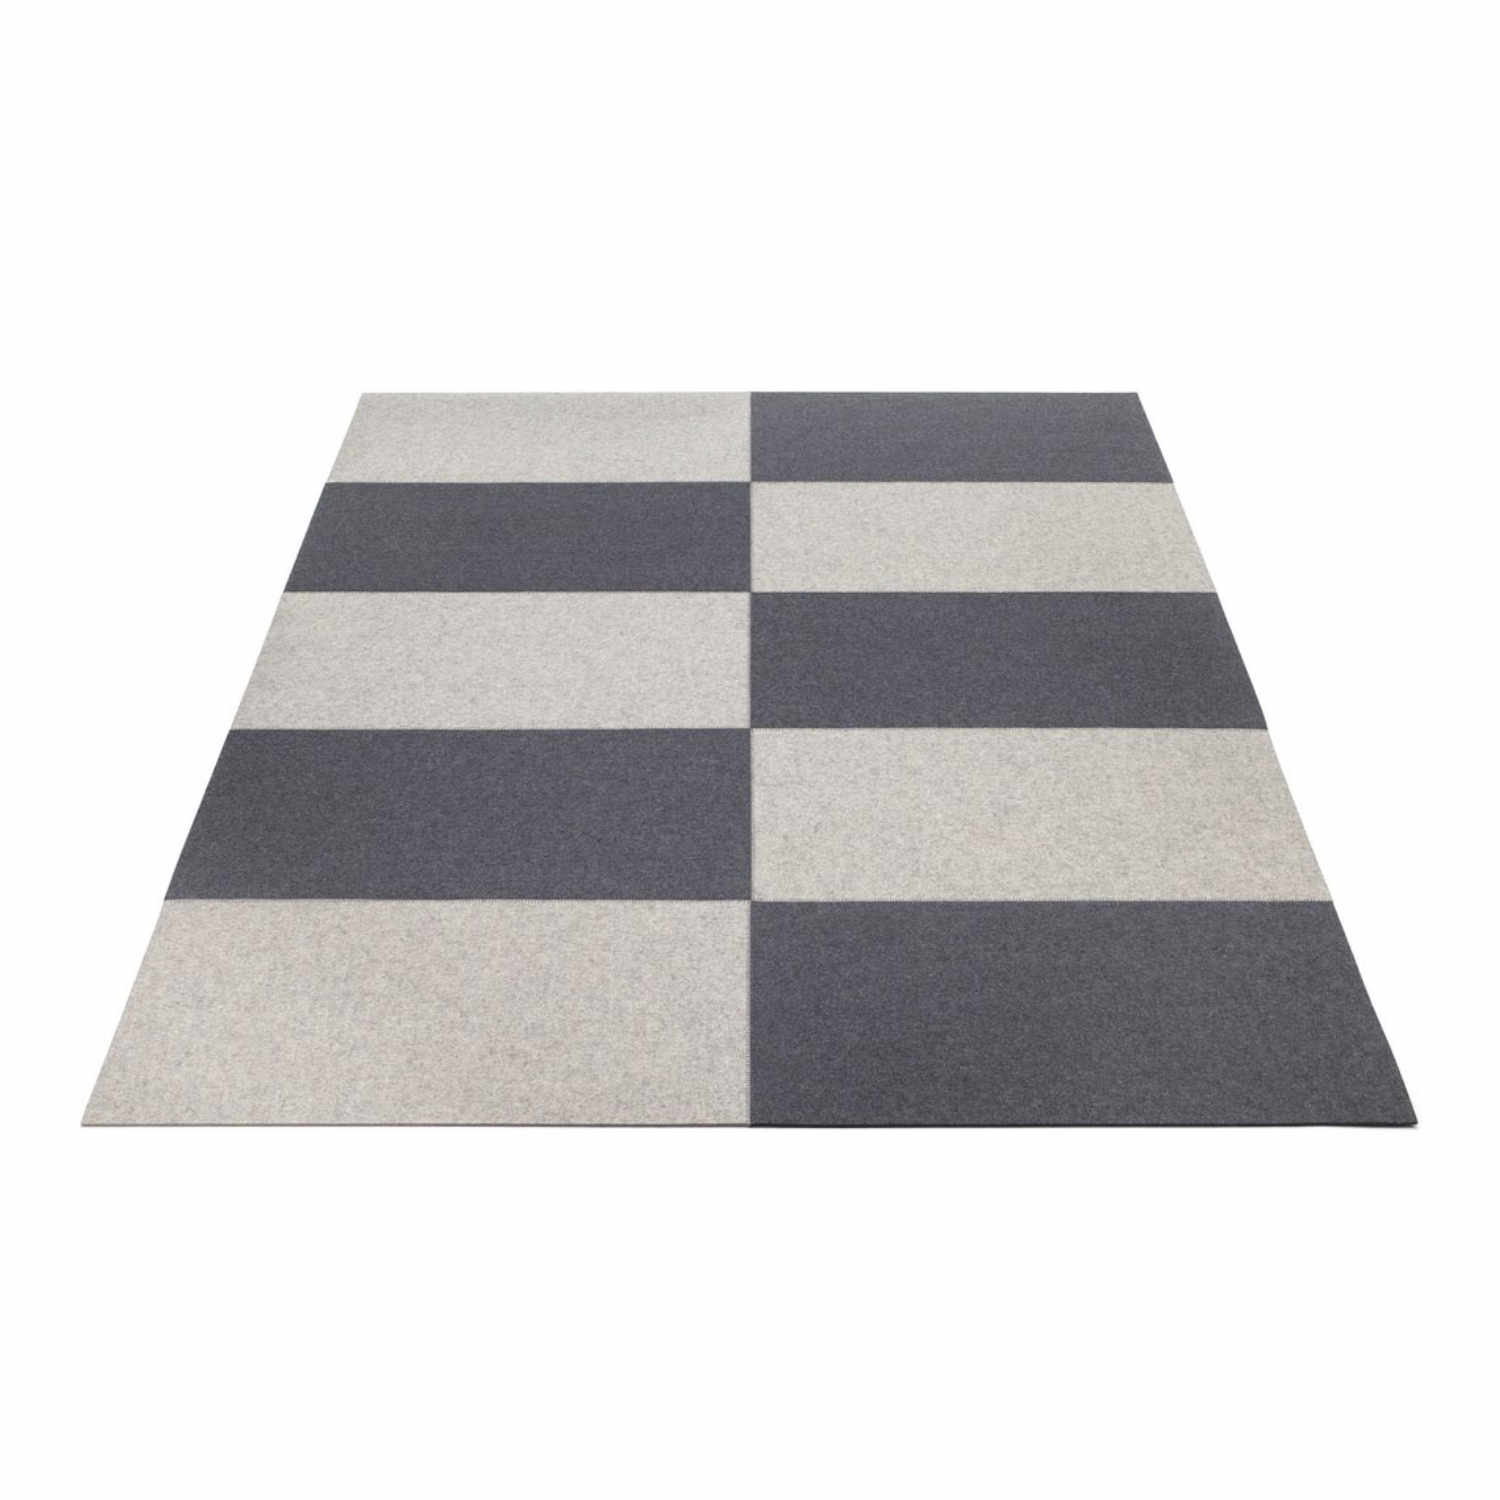 Field Teppich, Farbe graphit, Farbe 2 anthrazit 01, Grösse 180 × 200 cm von HEY-SIGN